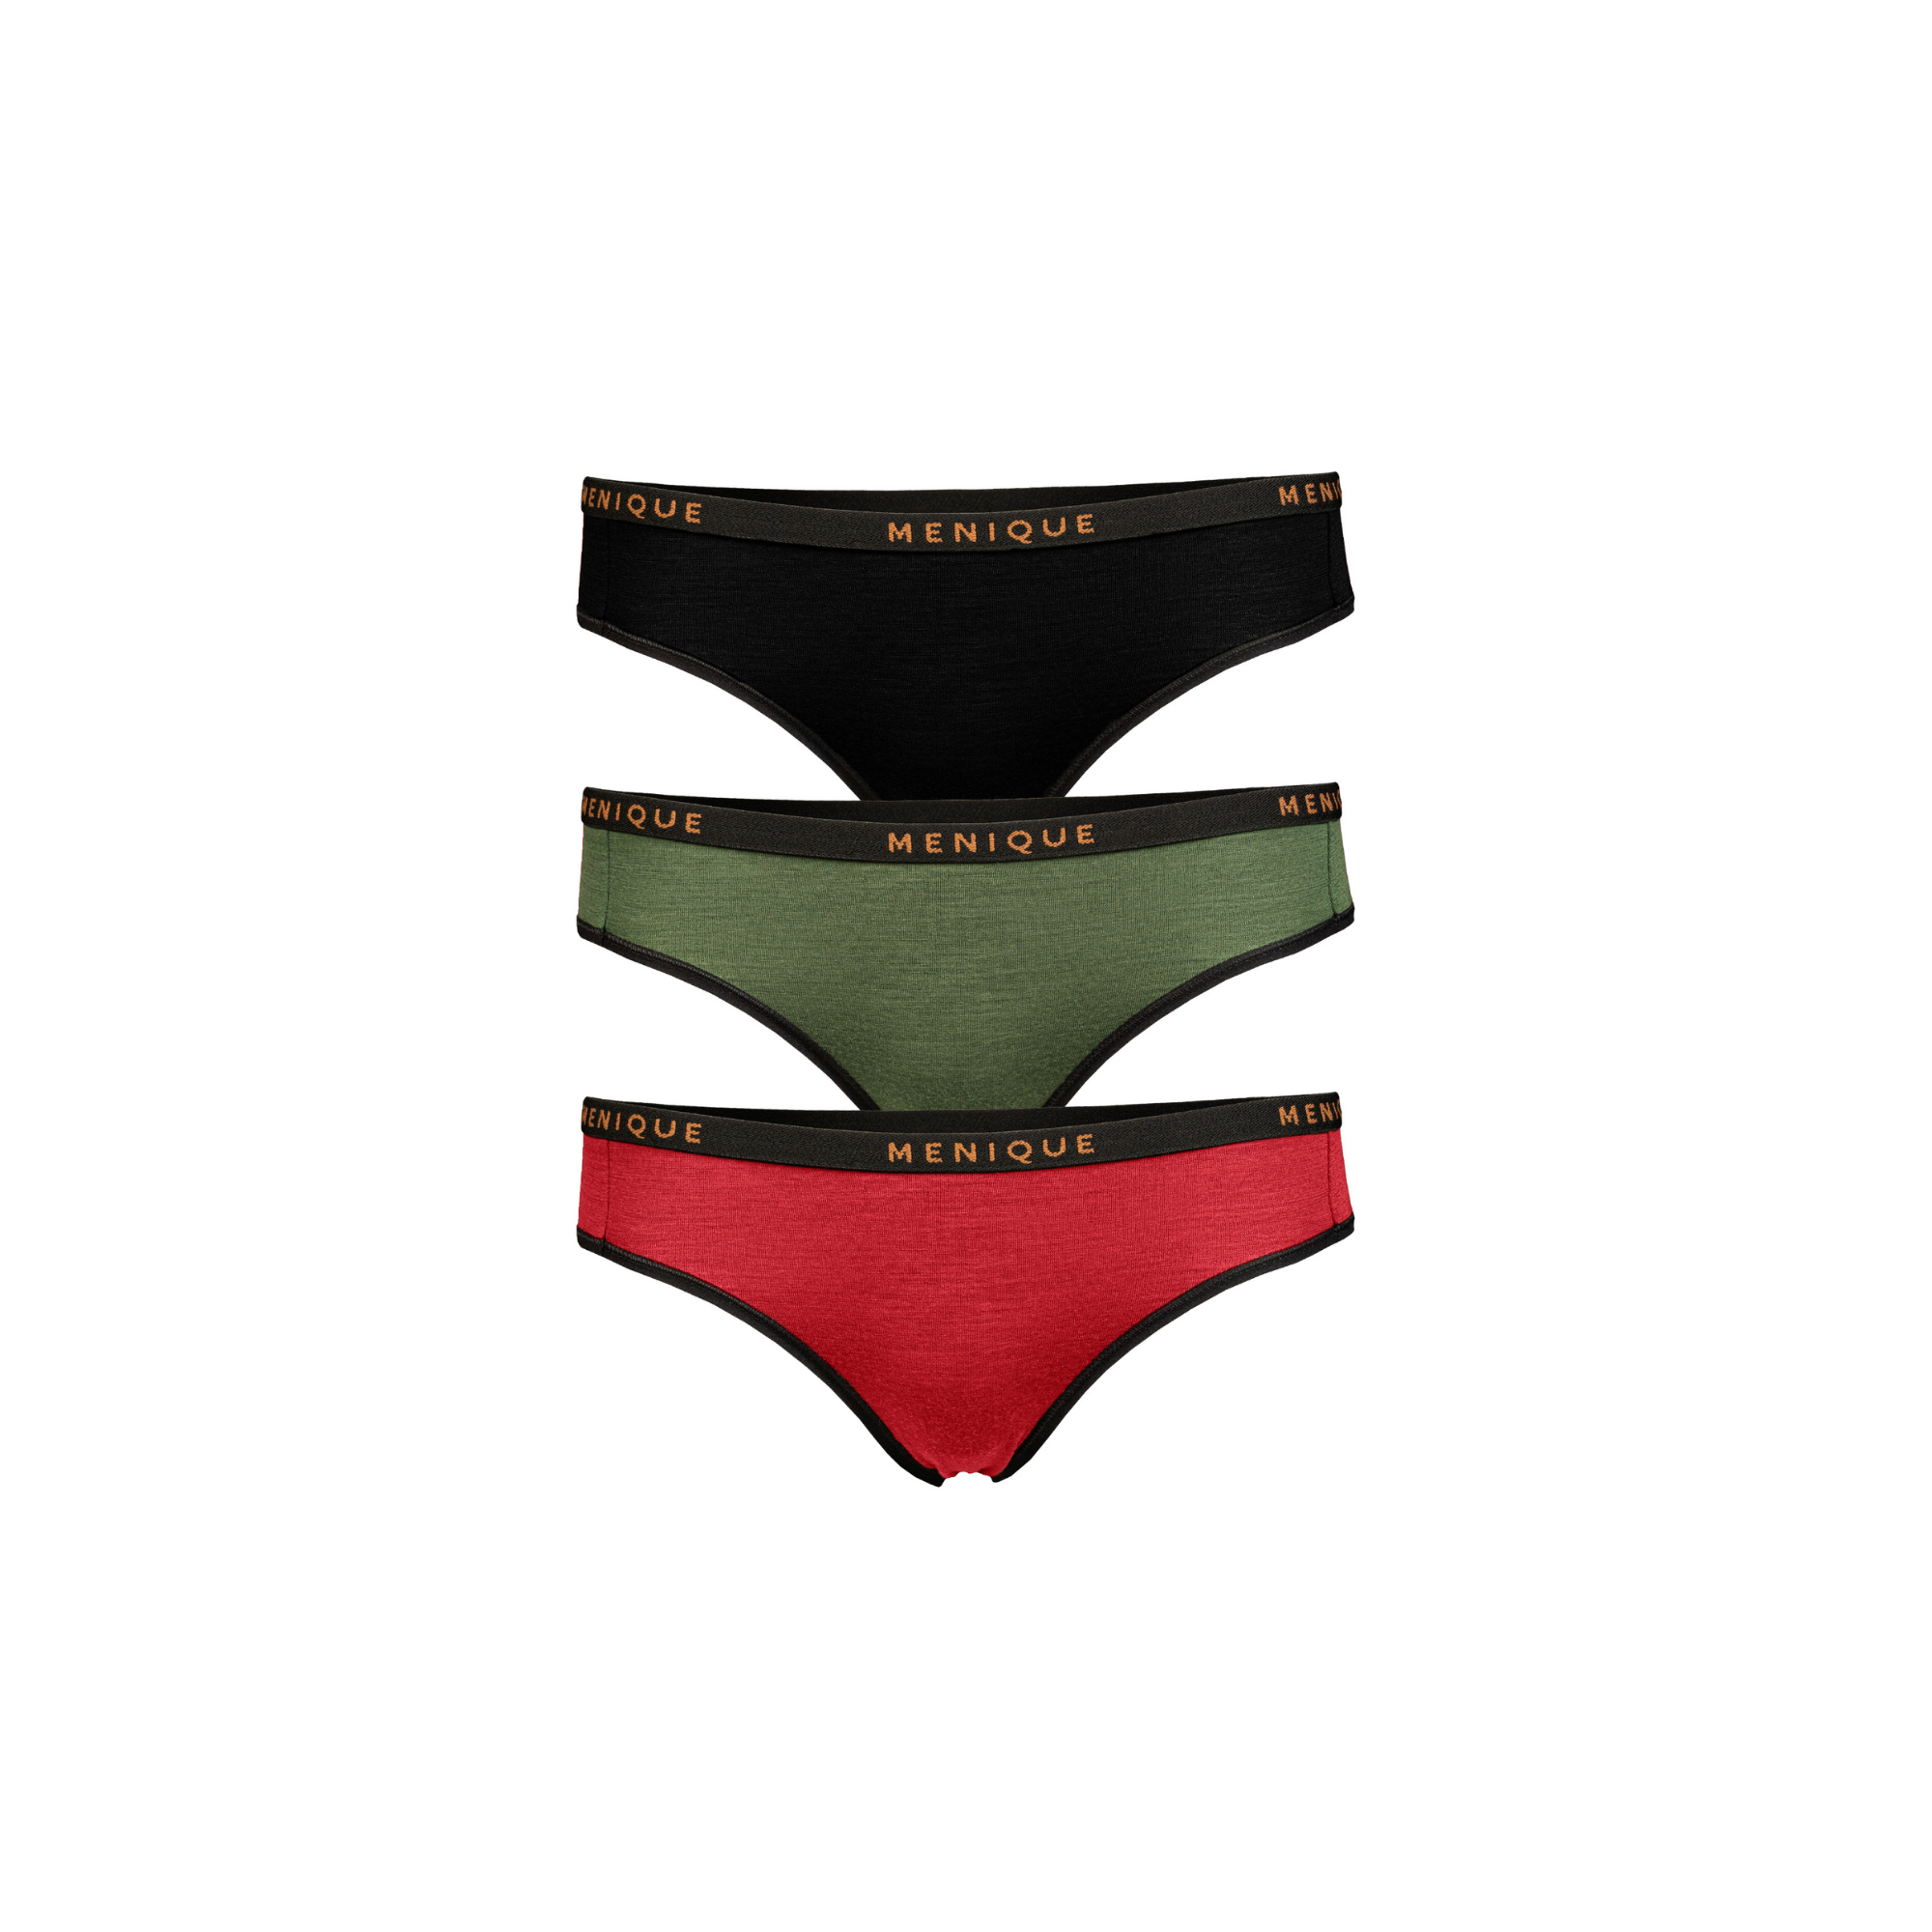 Women's Underwear Thong Briefs 3-Pack ❤️ menique